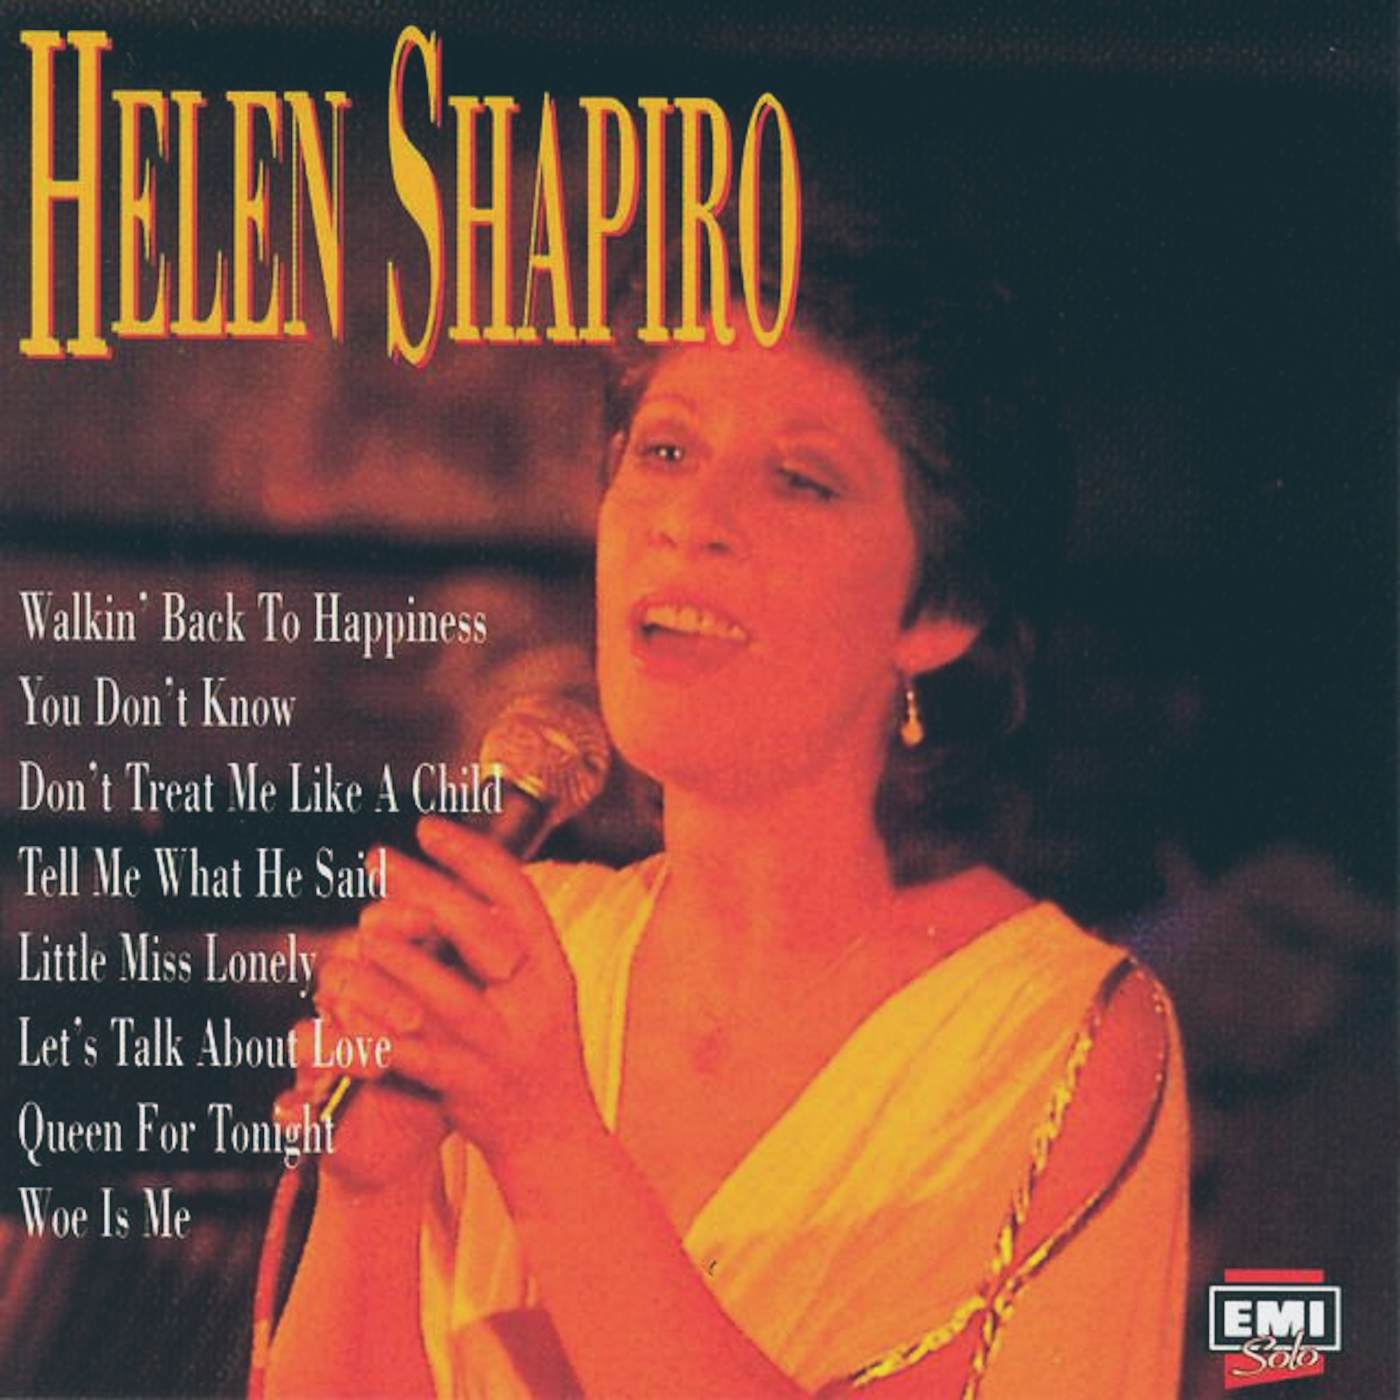 Helen Shapiro